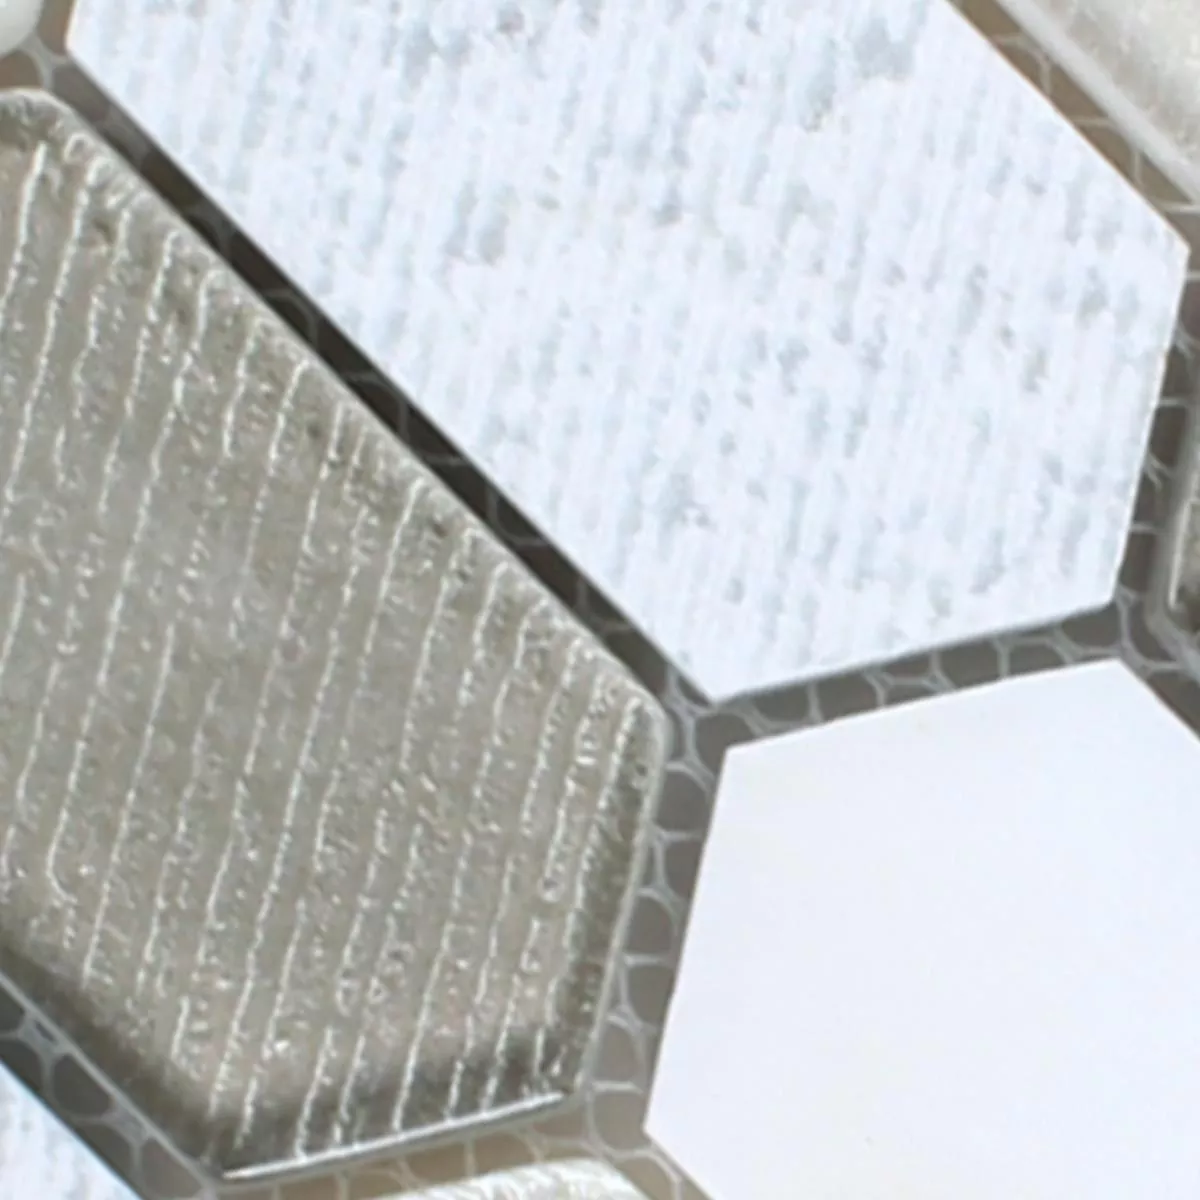 Campione Mosaico Februata Hexagon Bianco Beige Grigio